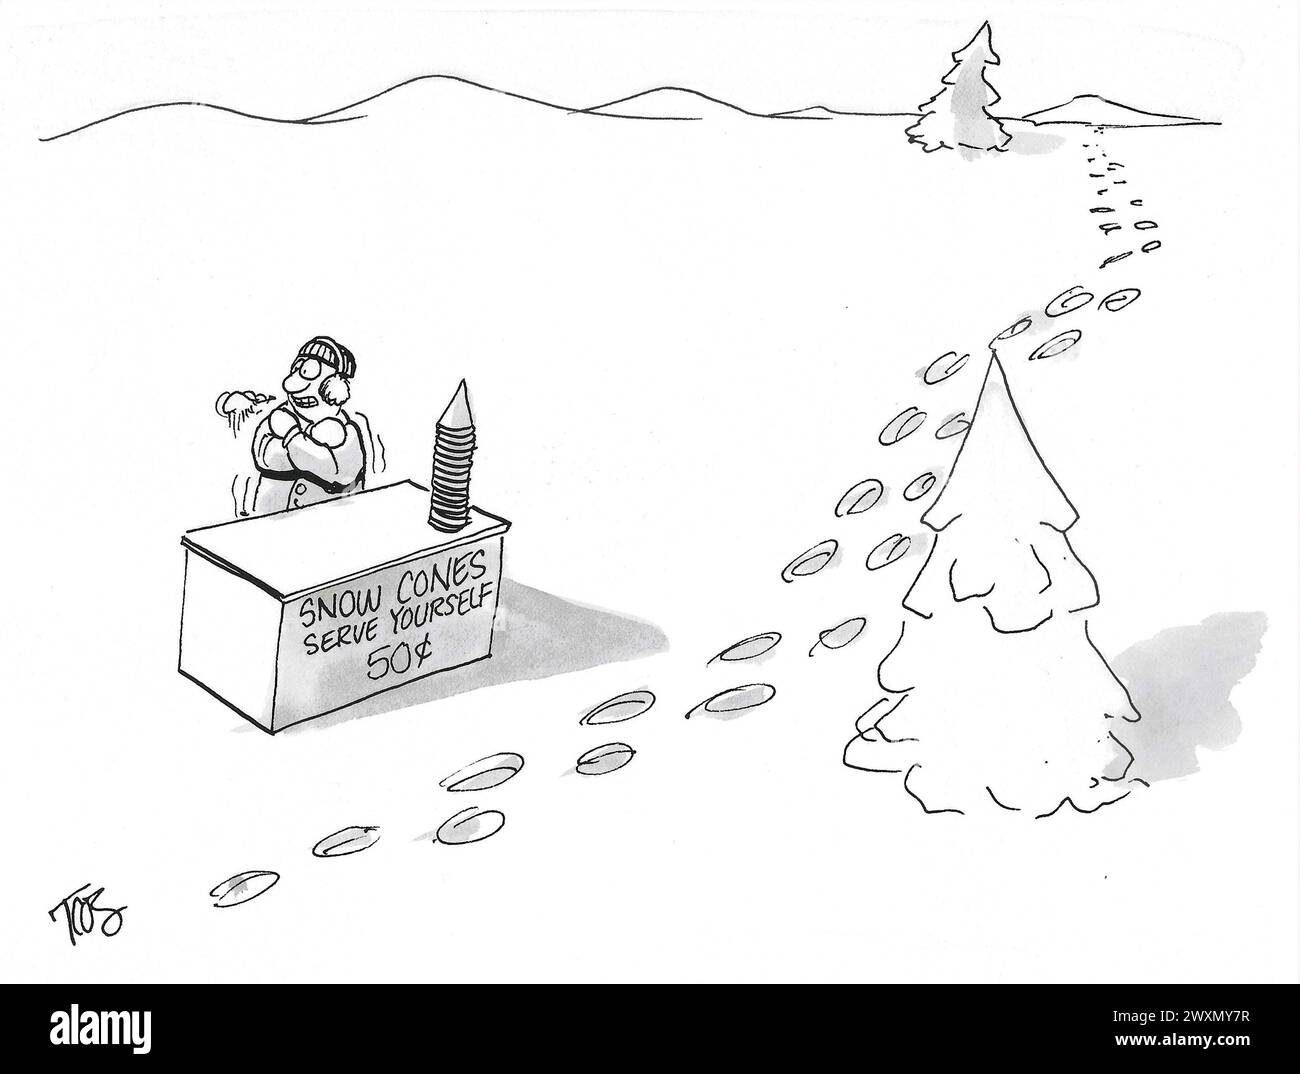 BW dessin animé d'un homme vendant des connes de neige, servez-vous, il n'a pas obtenu d'affaires. Banque D'Images